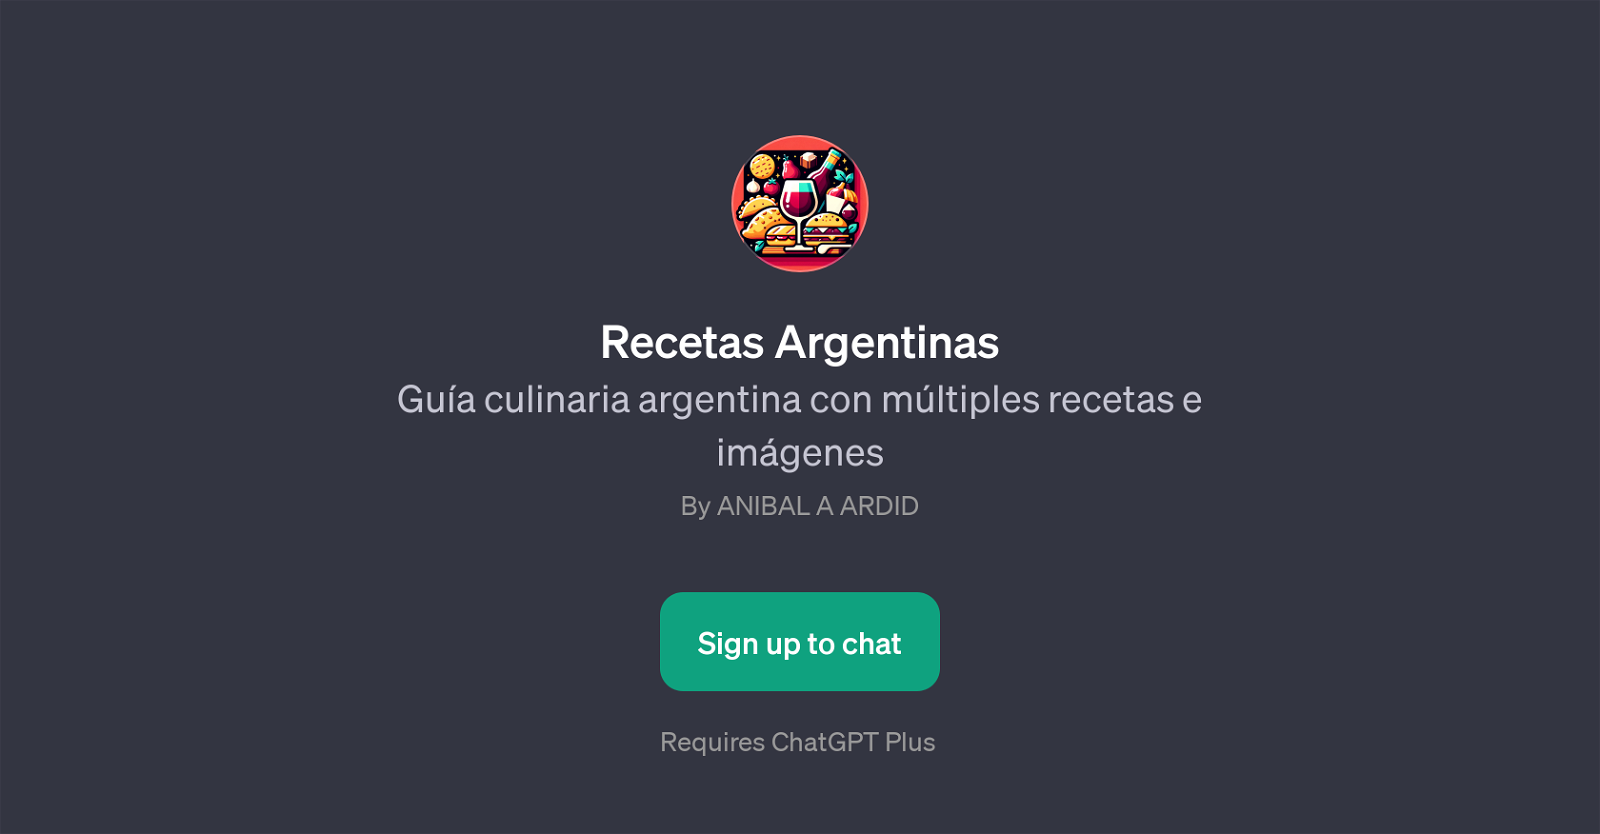 Recetas Argentinas website